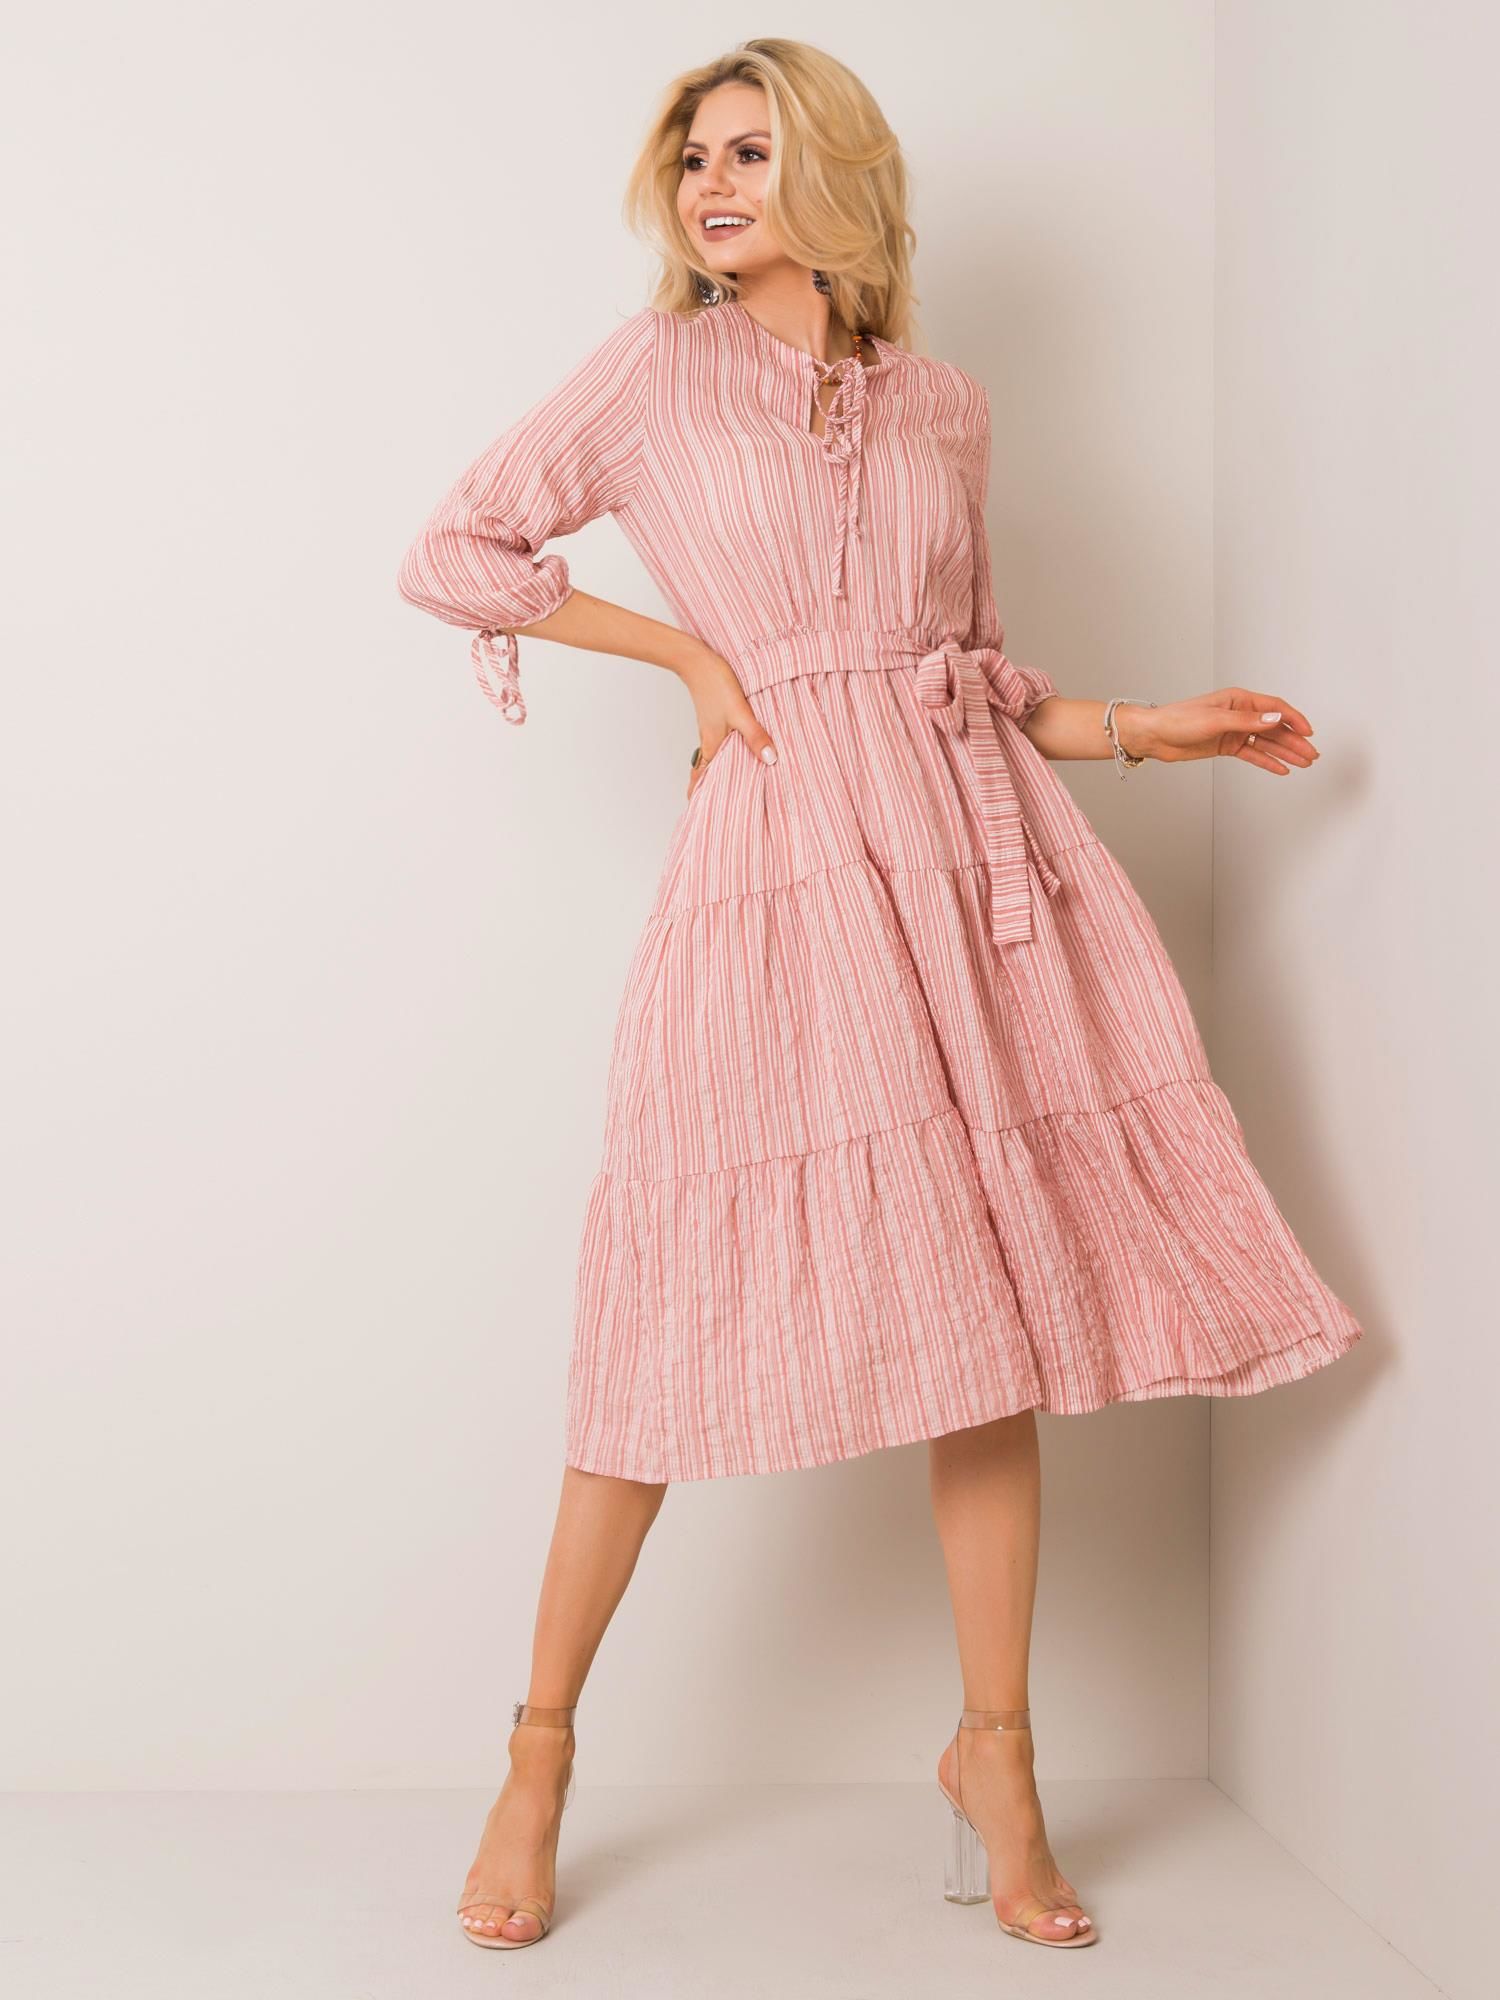 Dámské růžové šaty s páskem LK-SK-508005.07P-light pink Velikost: 36